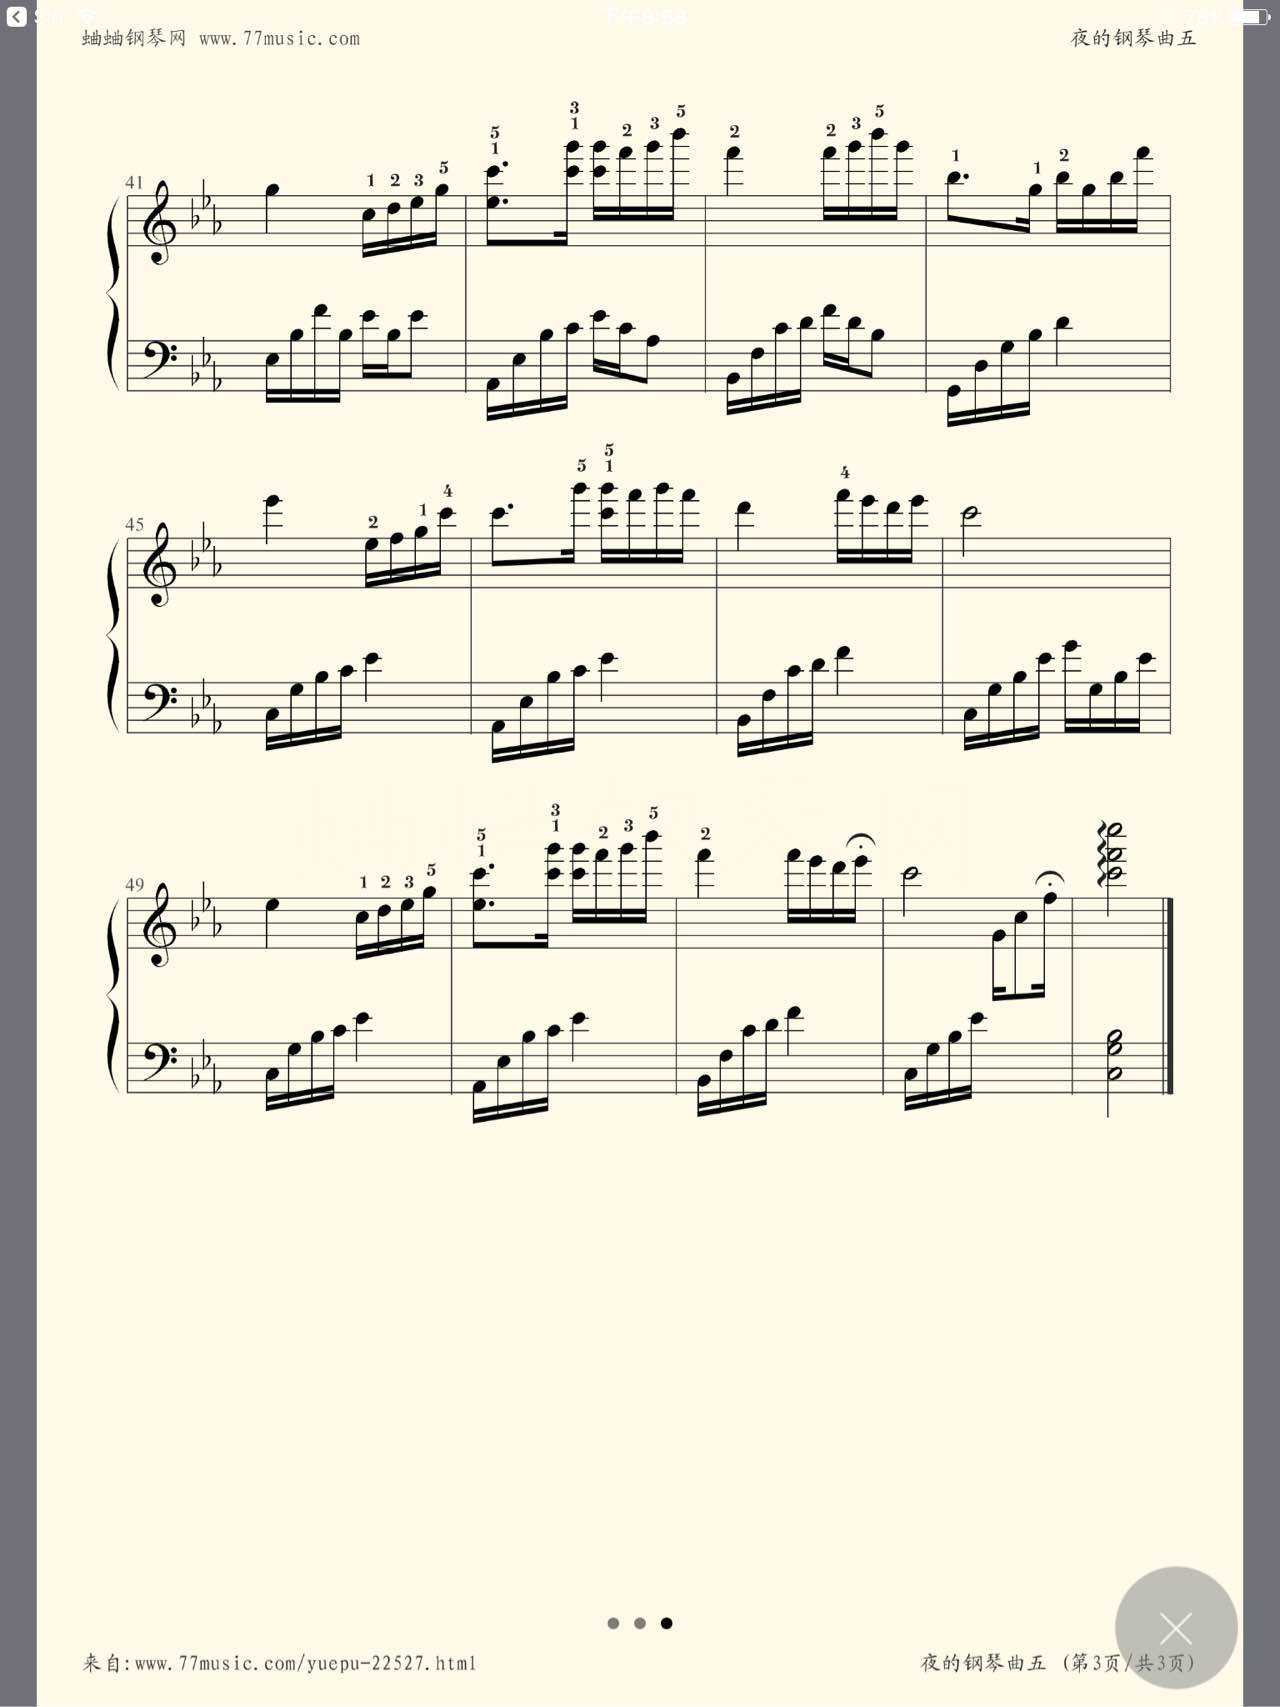 夜的钢琴曲5指法标记(夜的钢琴曲5琴谱完整带指法)